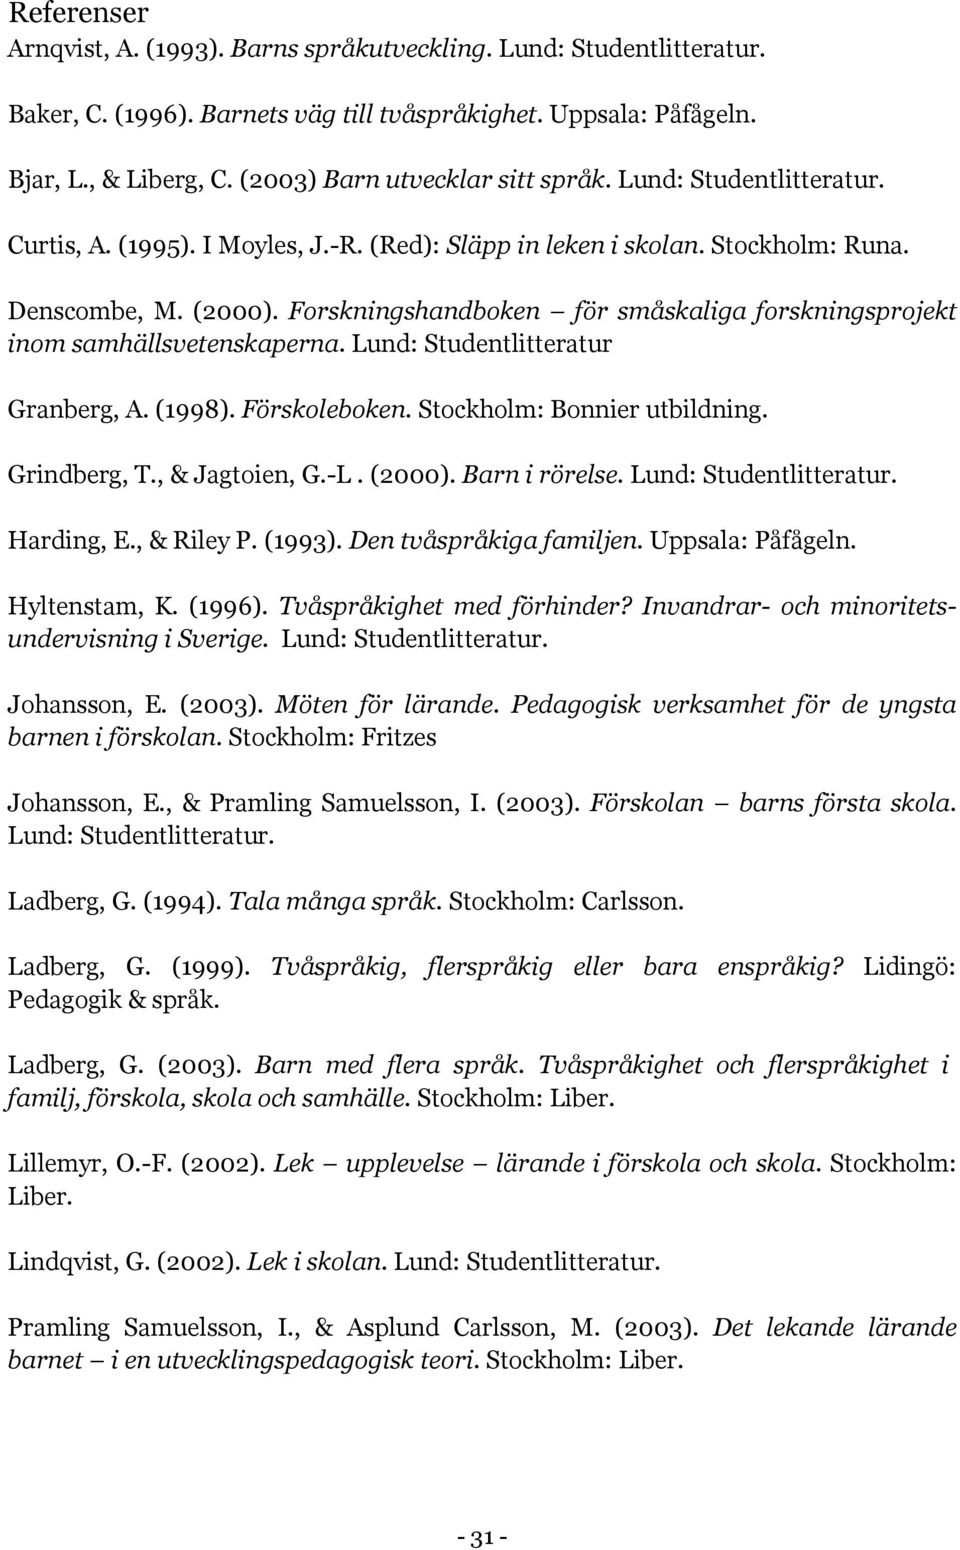 Forskningshandboken för småskaliga forskningsprojekt inom samhällsvetenskaperna. Lund: Studentlitteratur Granberg, A. (1998). Förskoleboken. Stockholm: Bonnier utbildning. Grindberg, T.